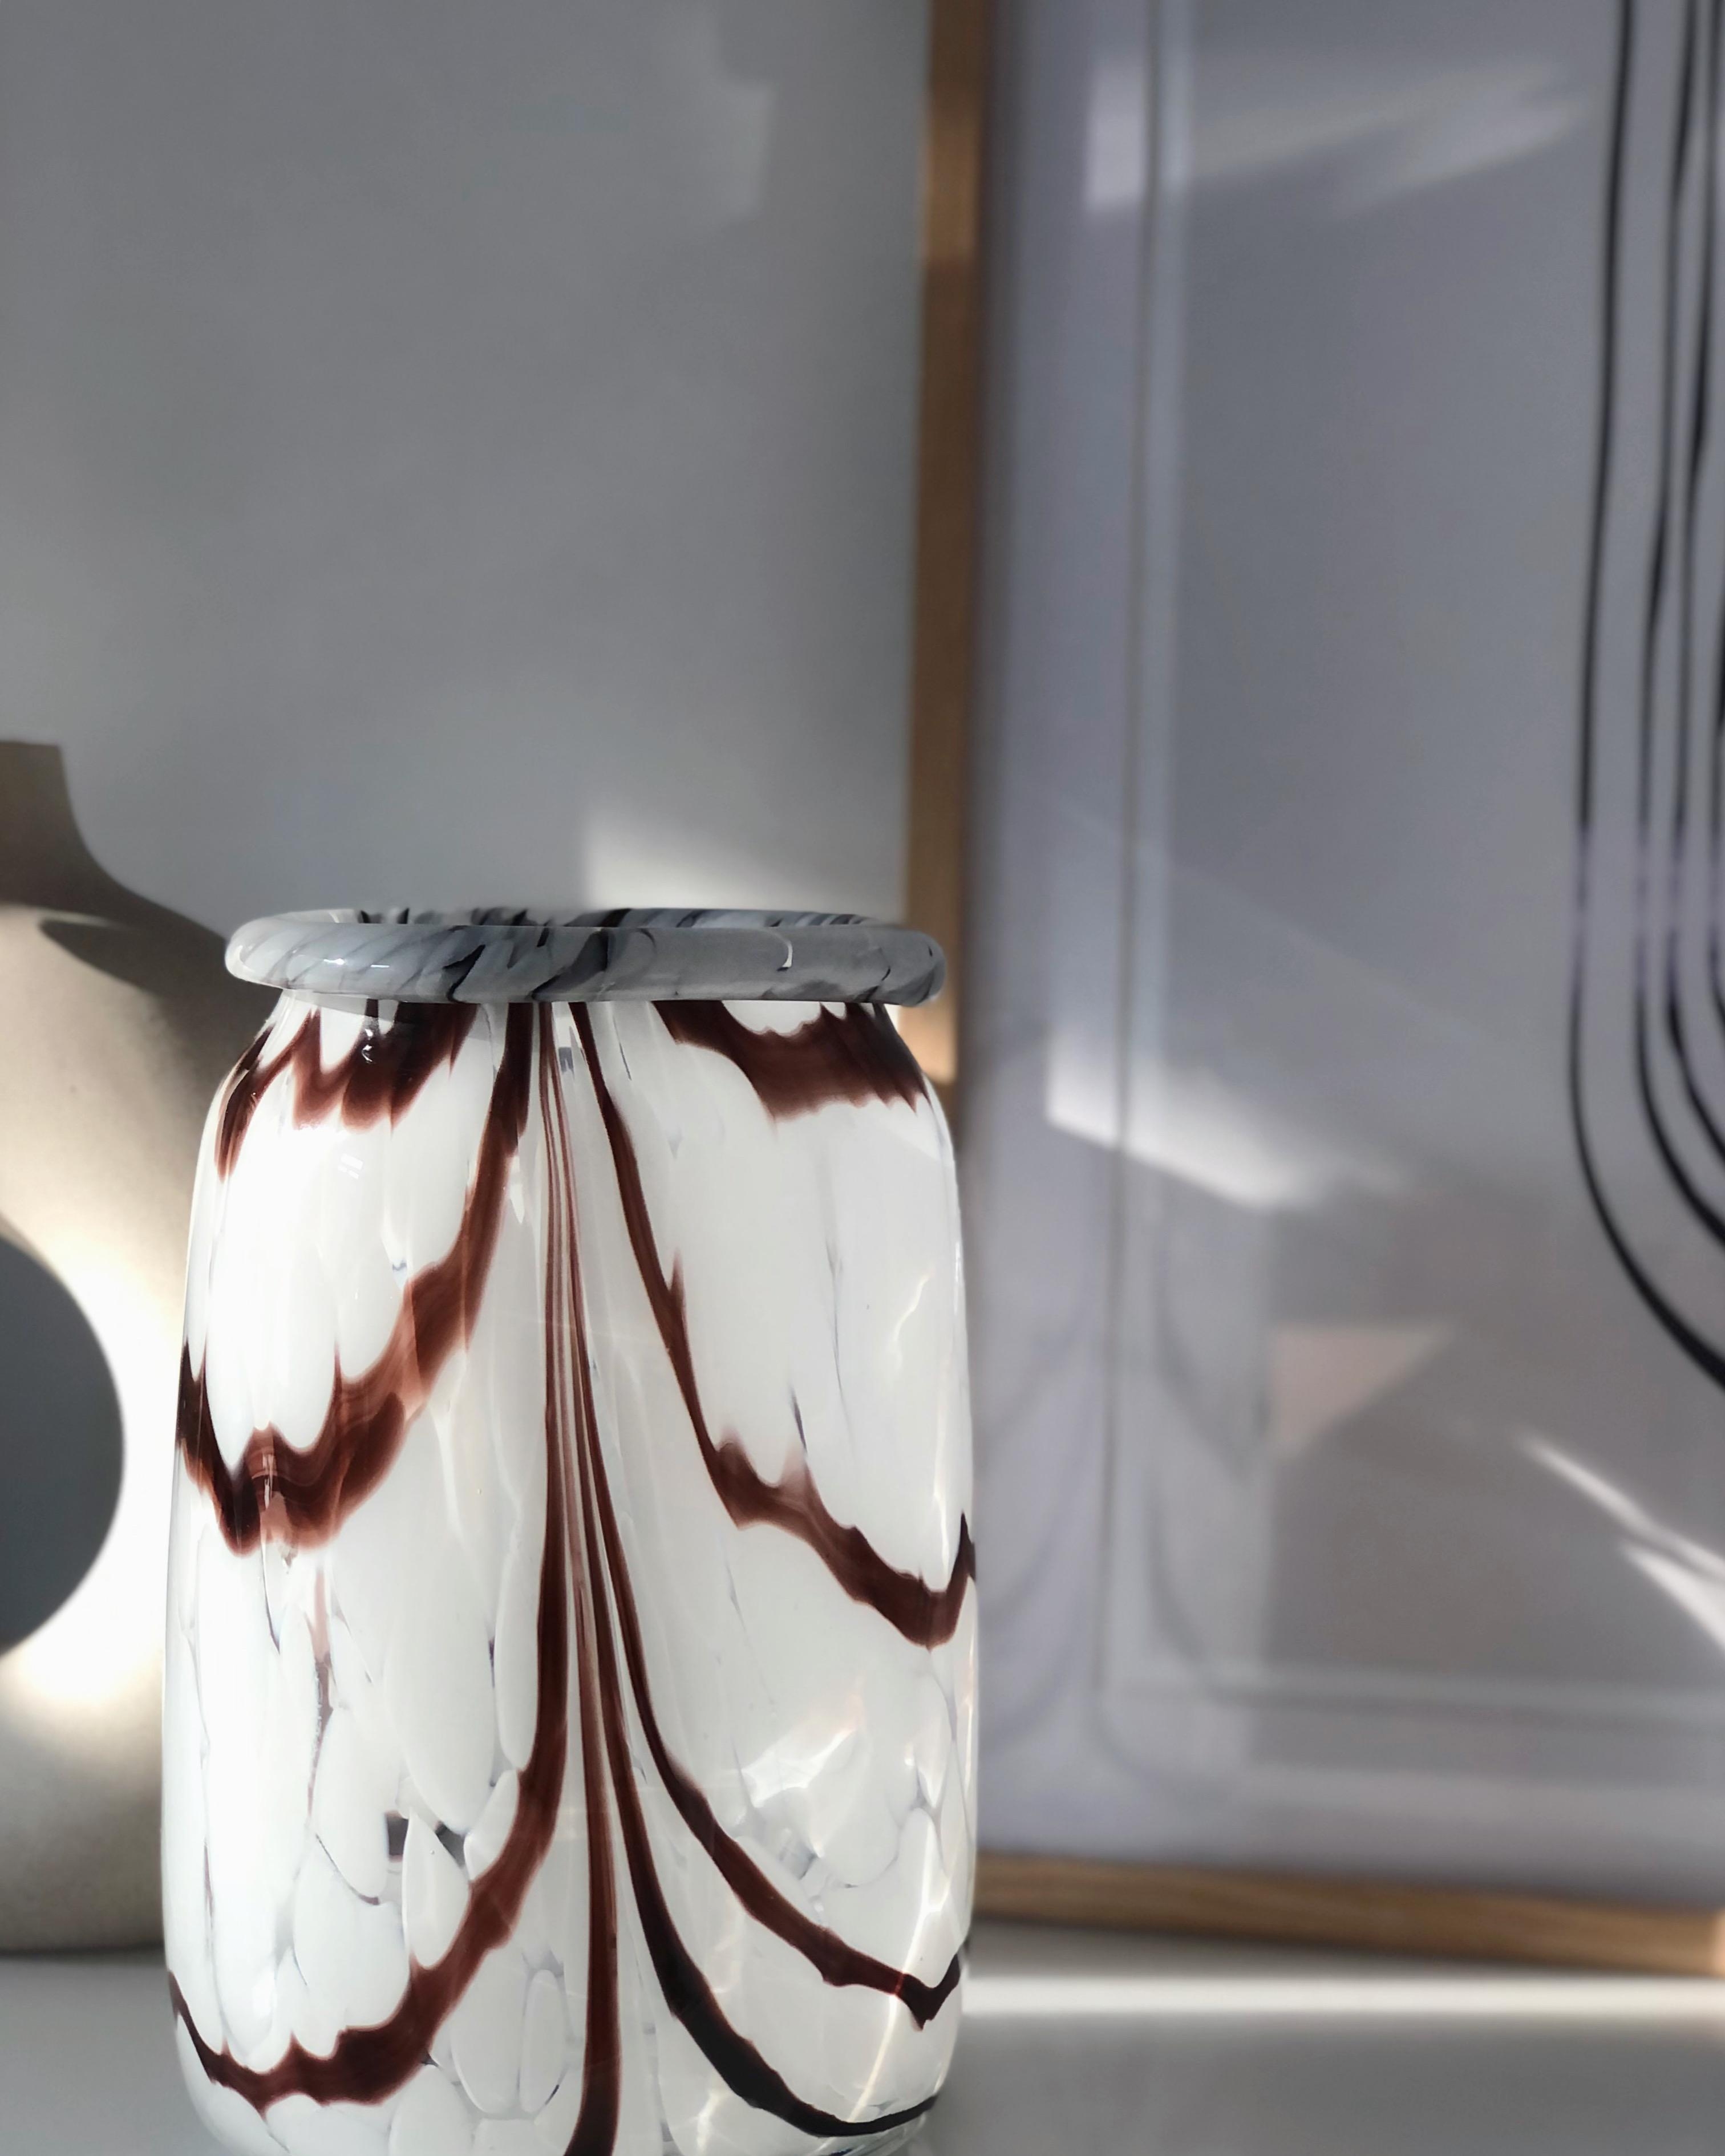 #vase #hay #deko #dekoration #decoration #dekoidee #design #lights #couchstyle #interior